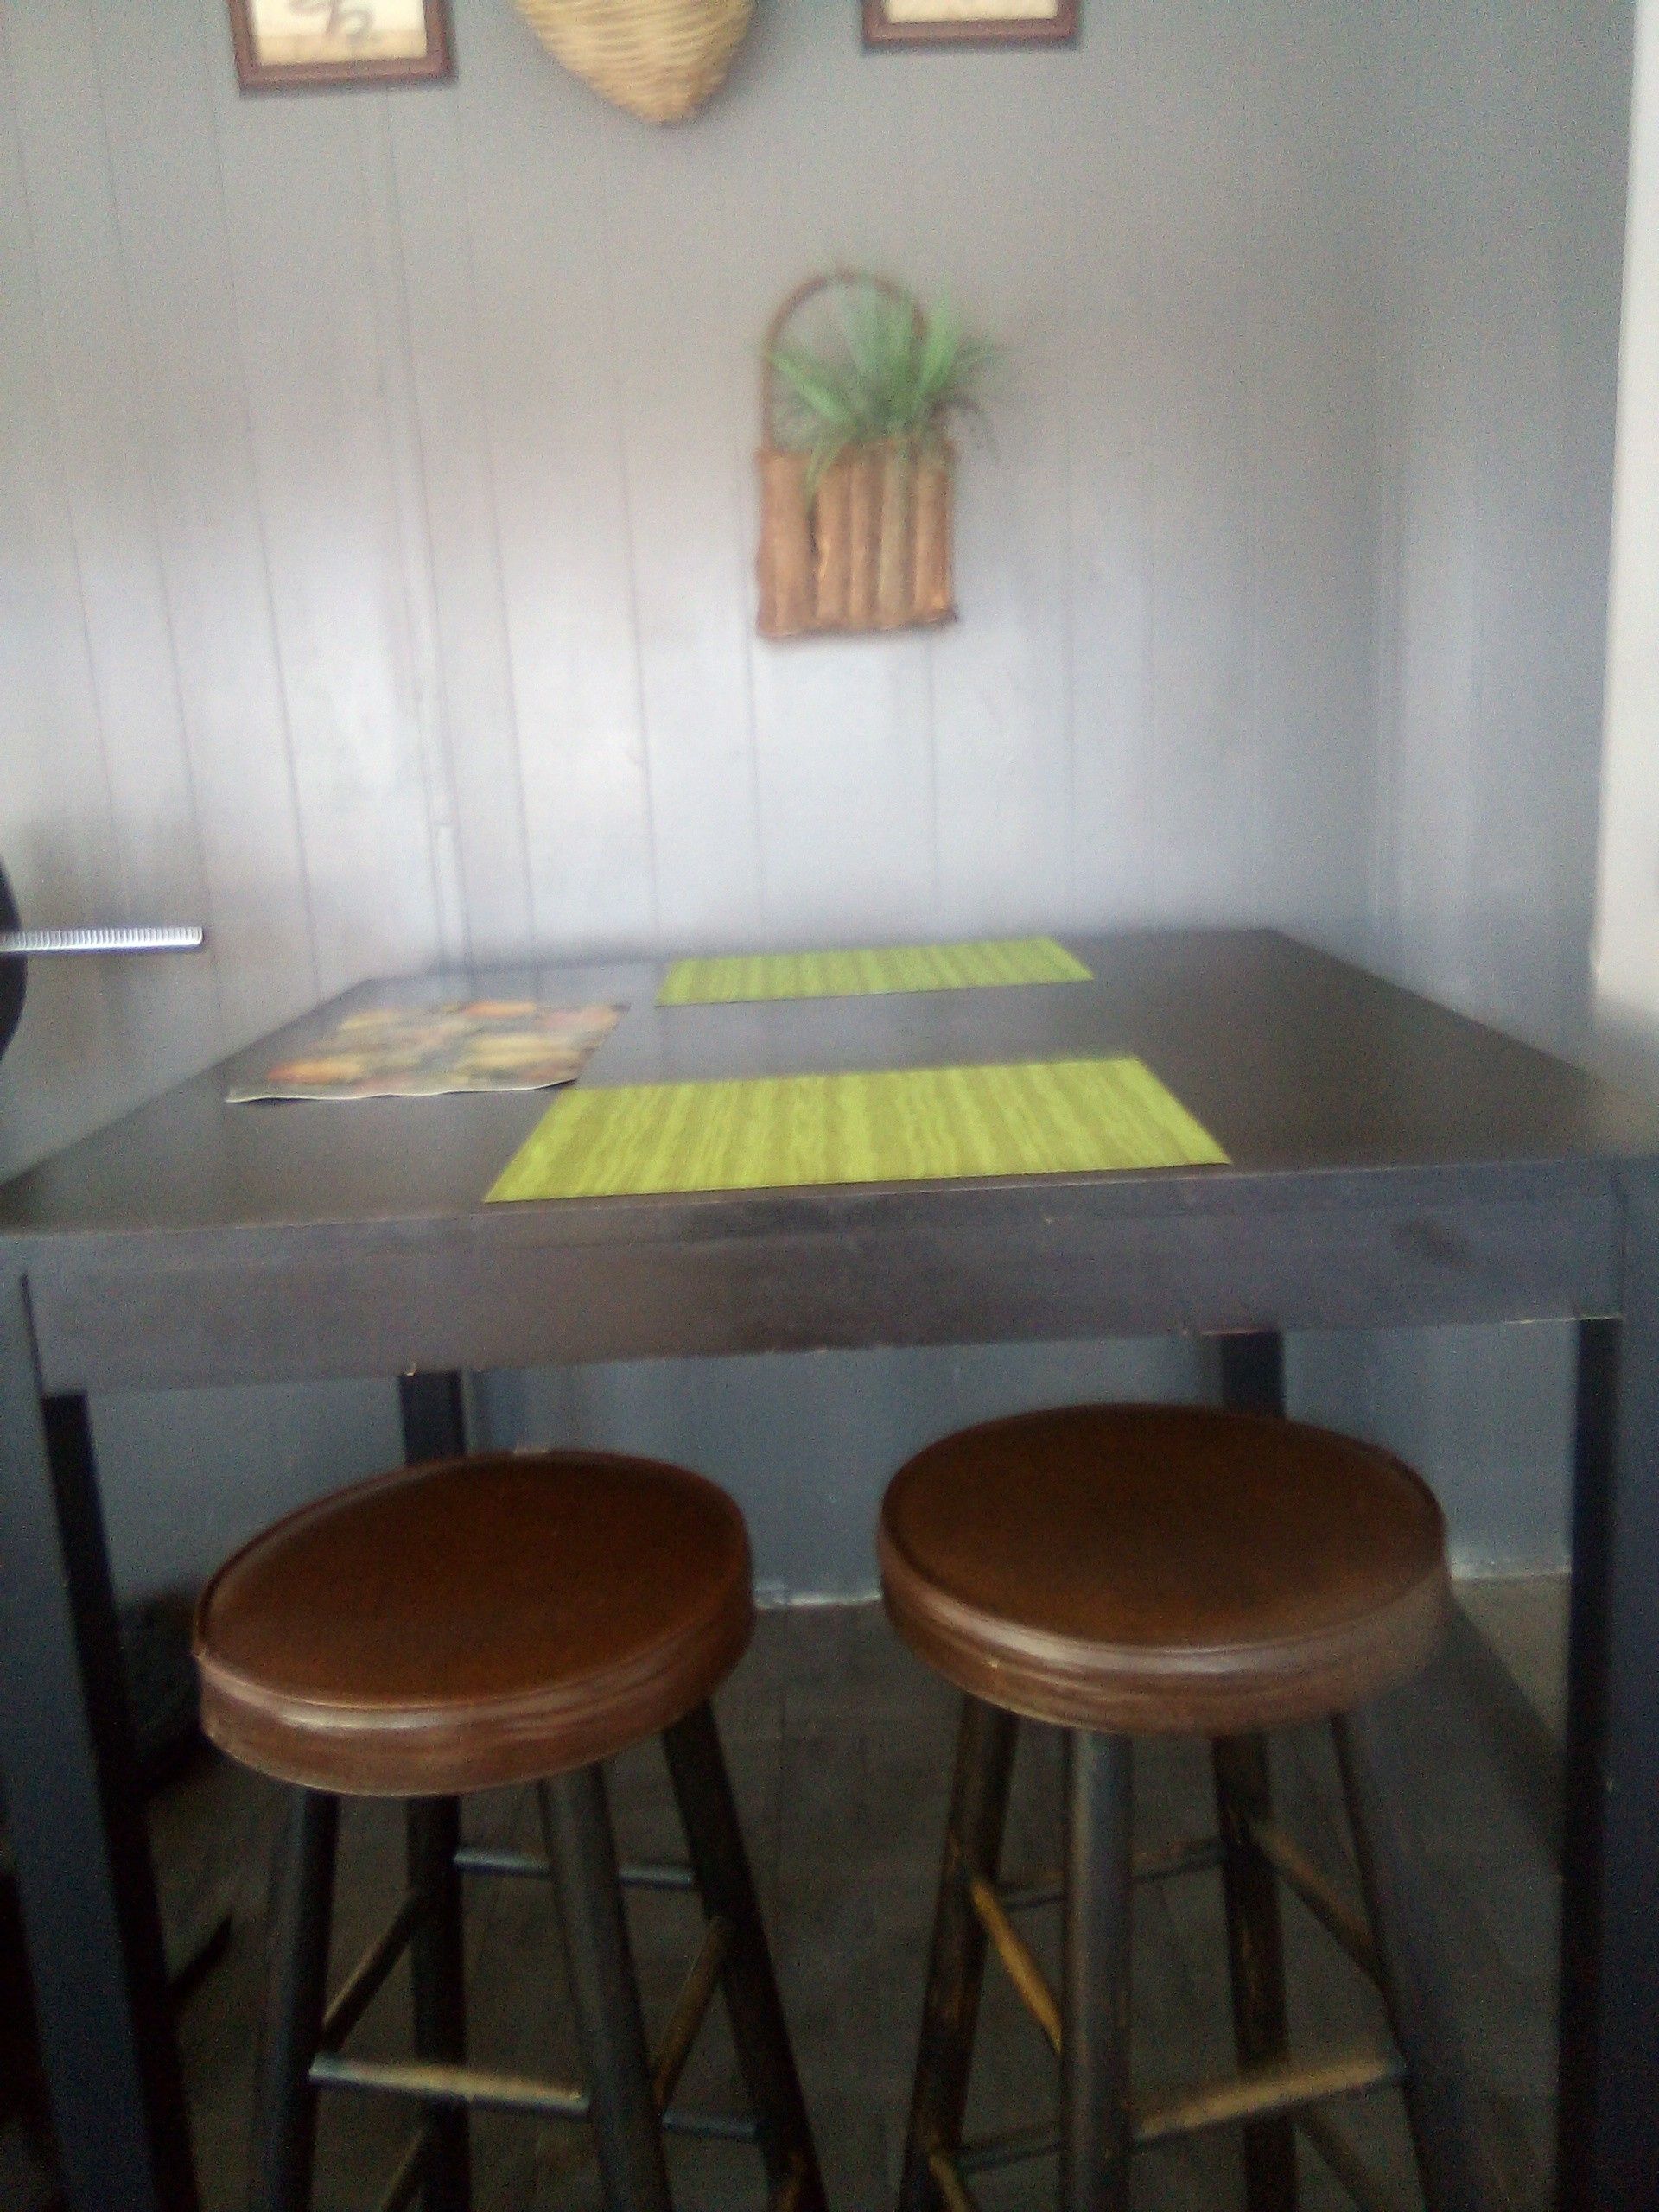 Ikea Tall Kitchen Table w 2 Bar stools